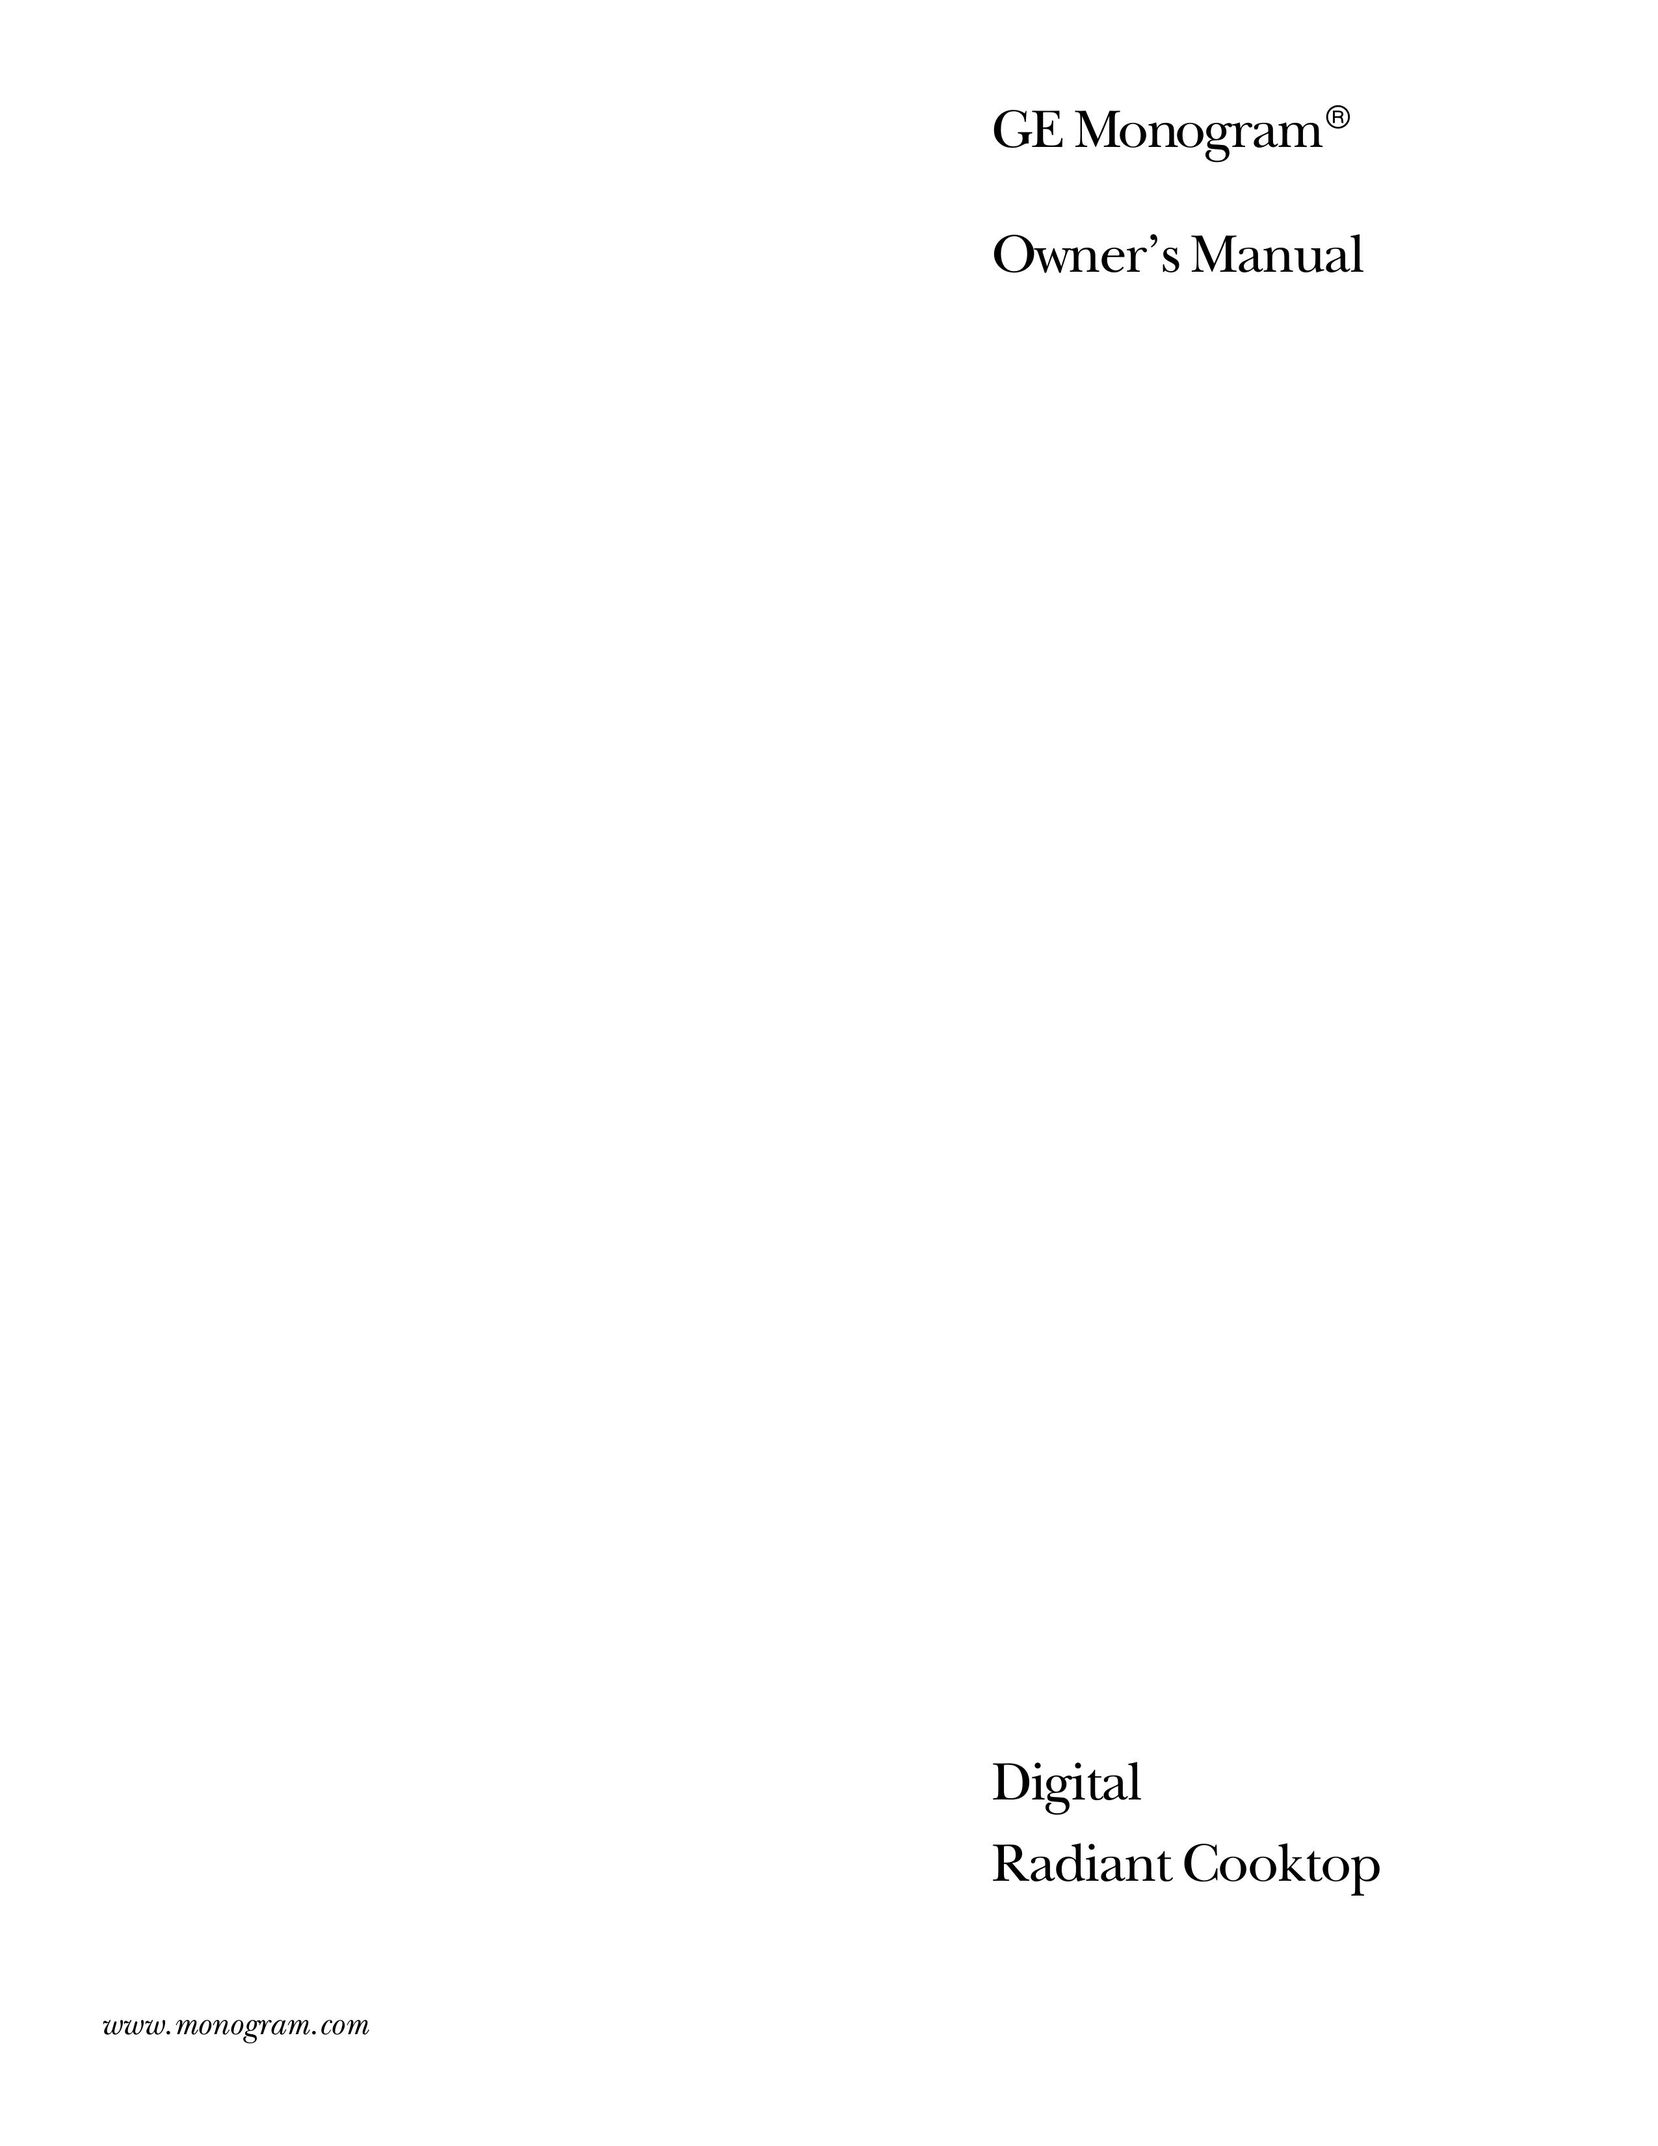 GE Monogram Digital Radiant Cooktop Cooktop User Manual